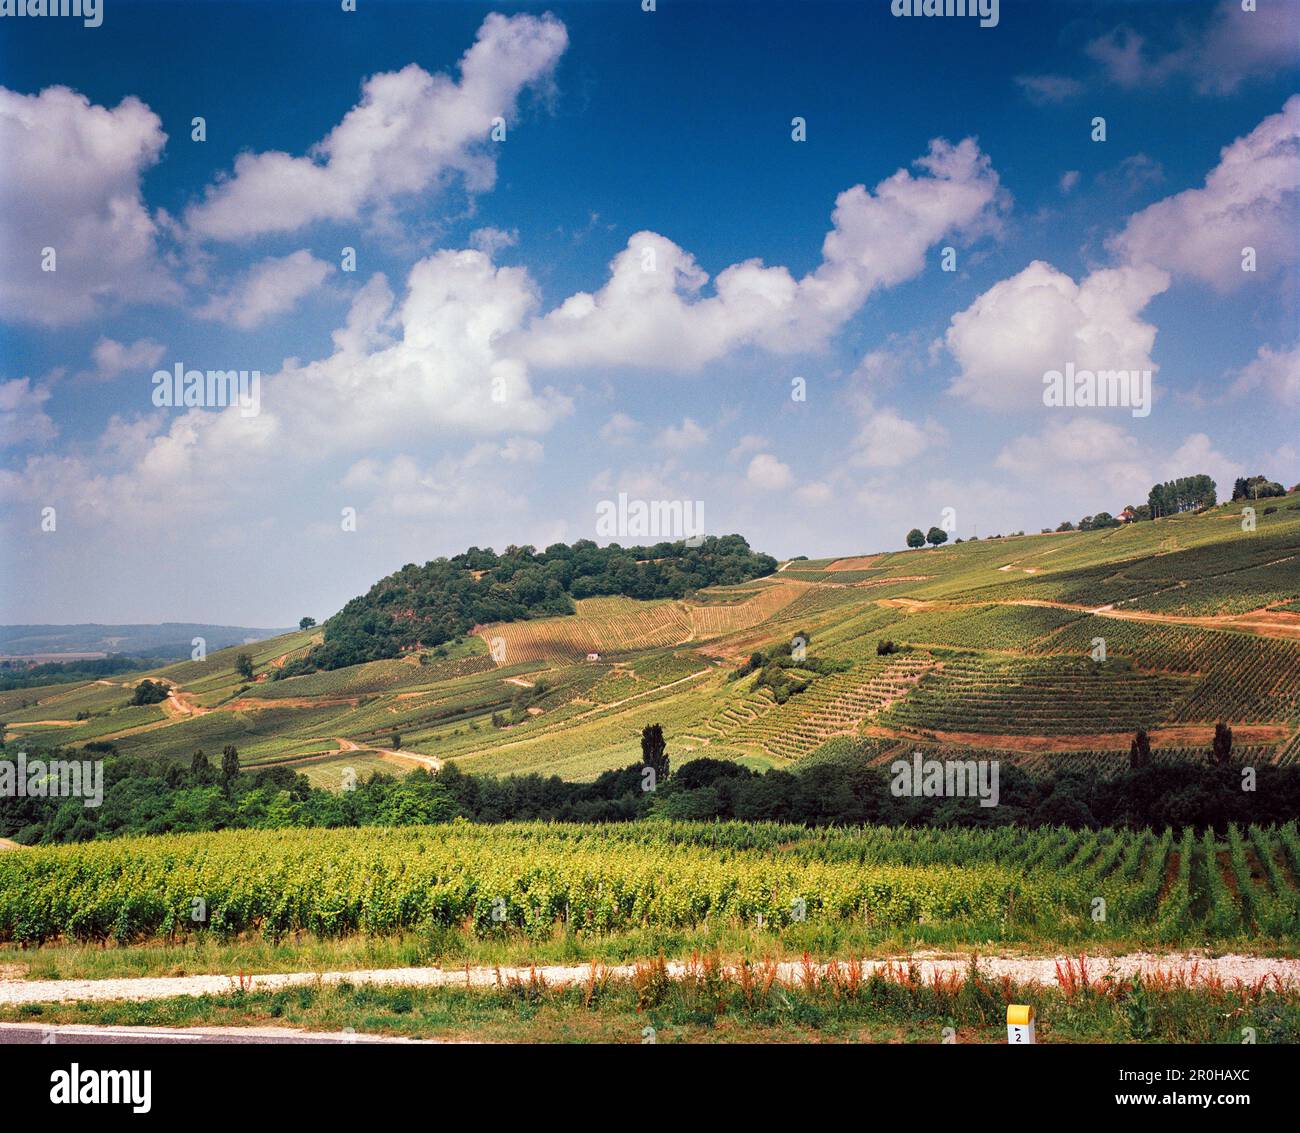 FRANKREICH, Franche-Comte, die Weinberge von Trauben, die zur Erzeugung von Vin Jaune angebaut werden, in der Nähe des Chateau Chalon in Ostfrankreich, Weinregion Jura Stockfoto